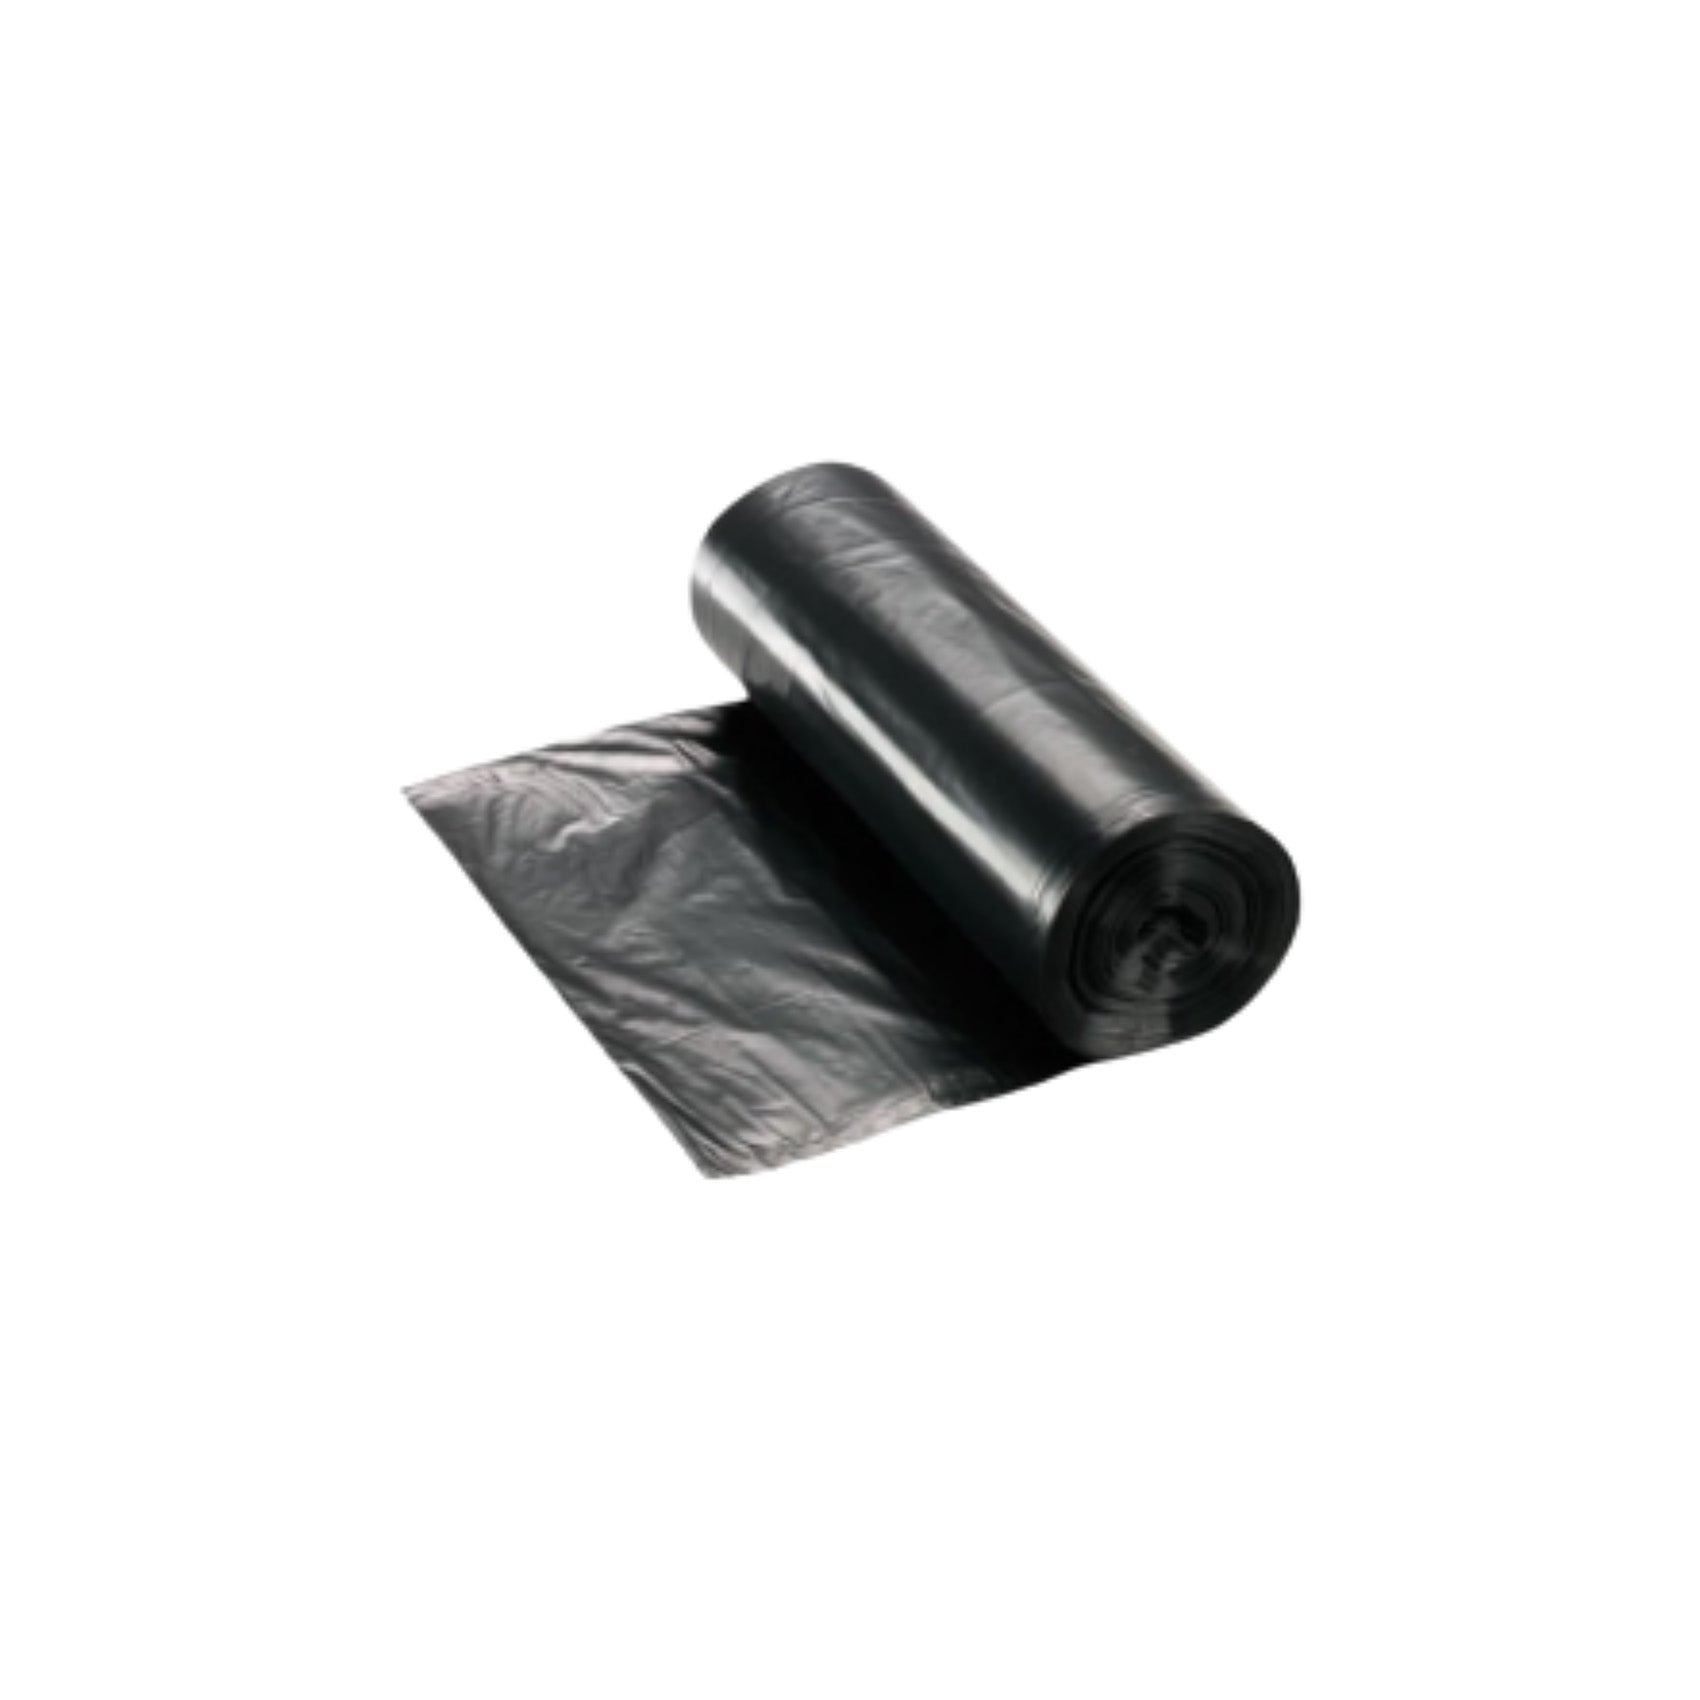 Sacos do lixo pretos G.150, para 150L, adequados para retenção de resíduos de uso doméstico ou industrial.  Os sacos vêm em formato de rolo. 90*120CM